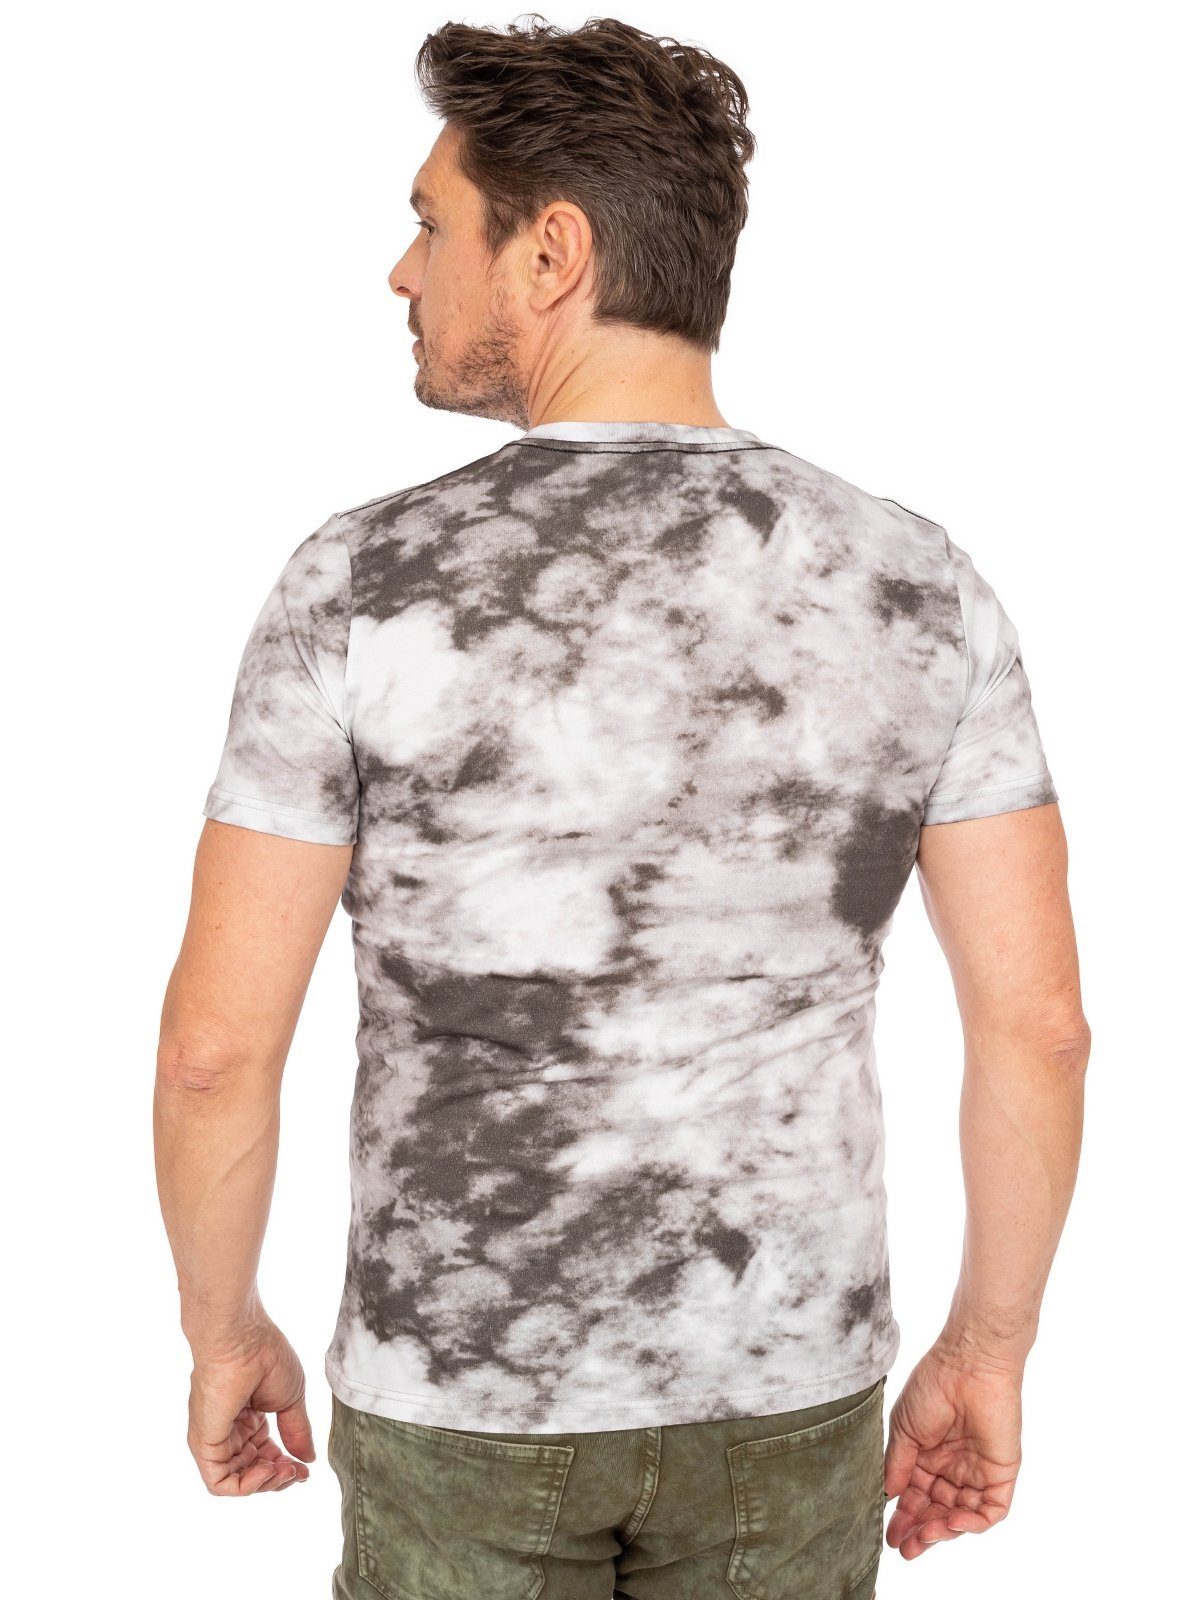 Almsach Trachtenshirt T-Shirt 151 CO stone